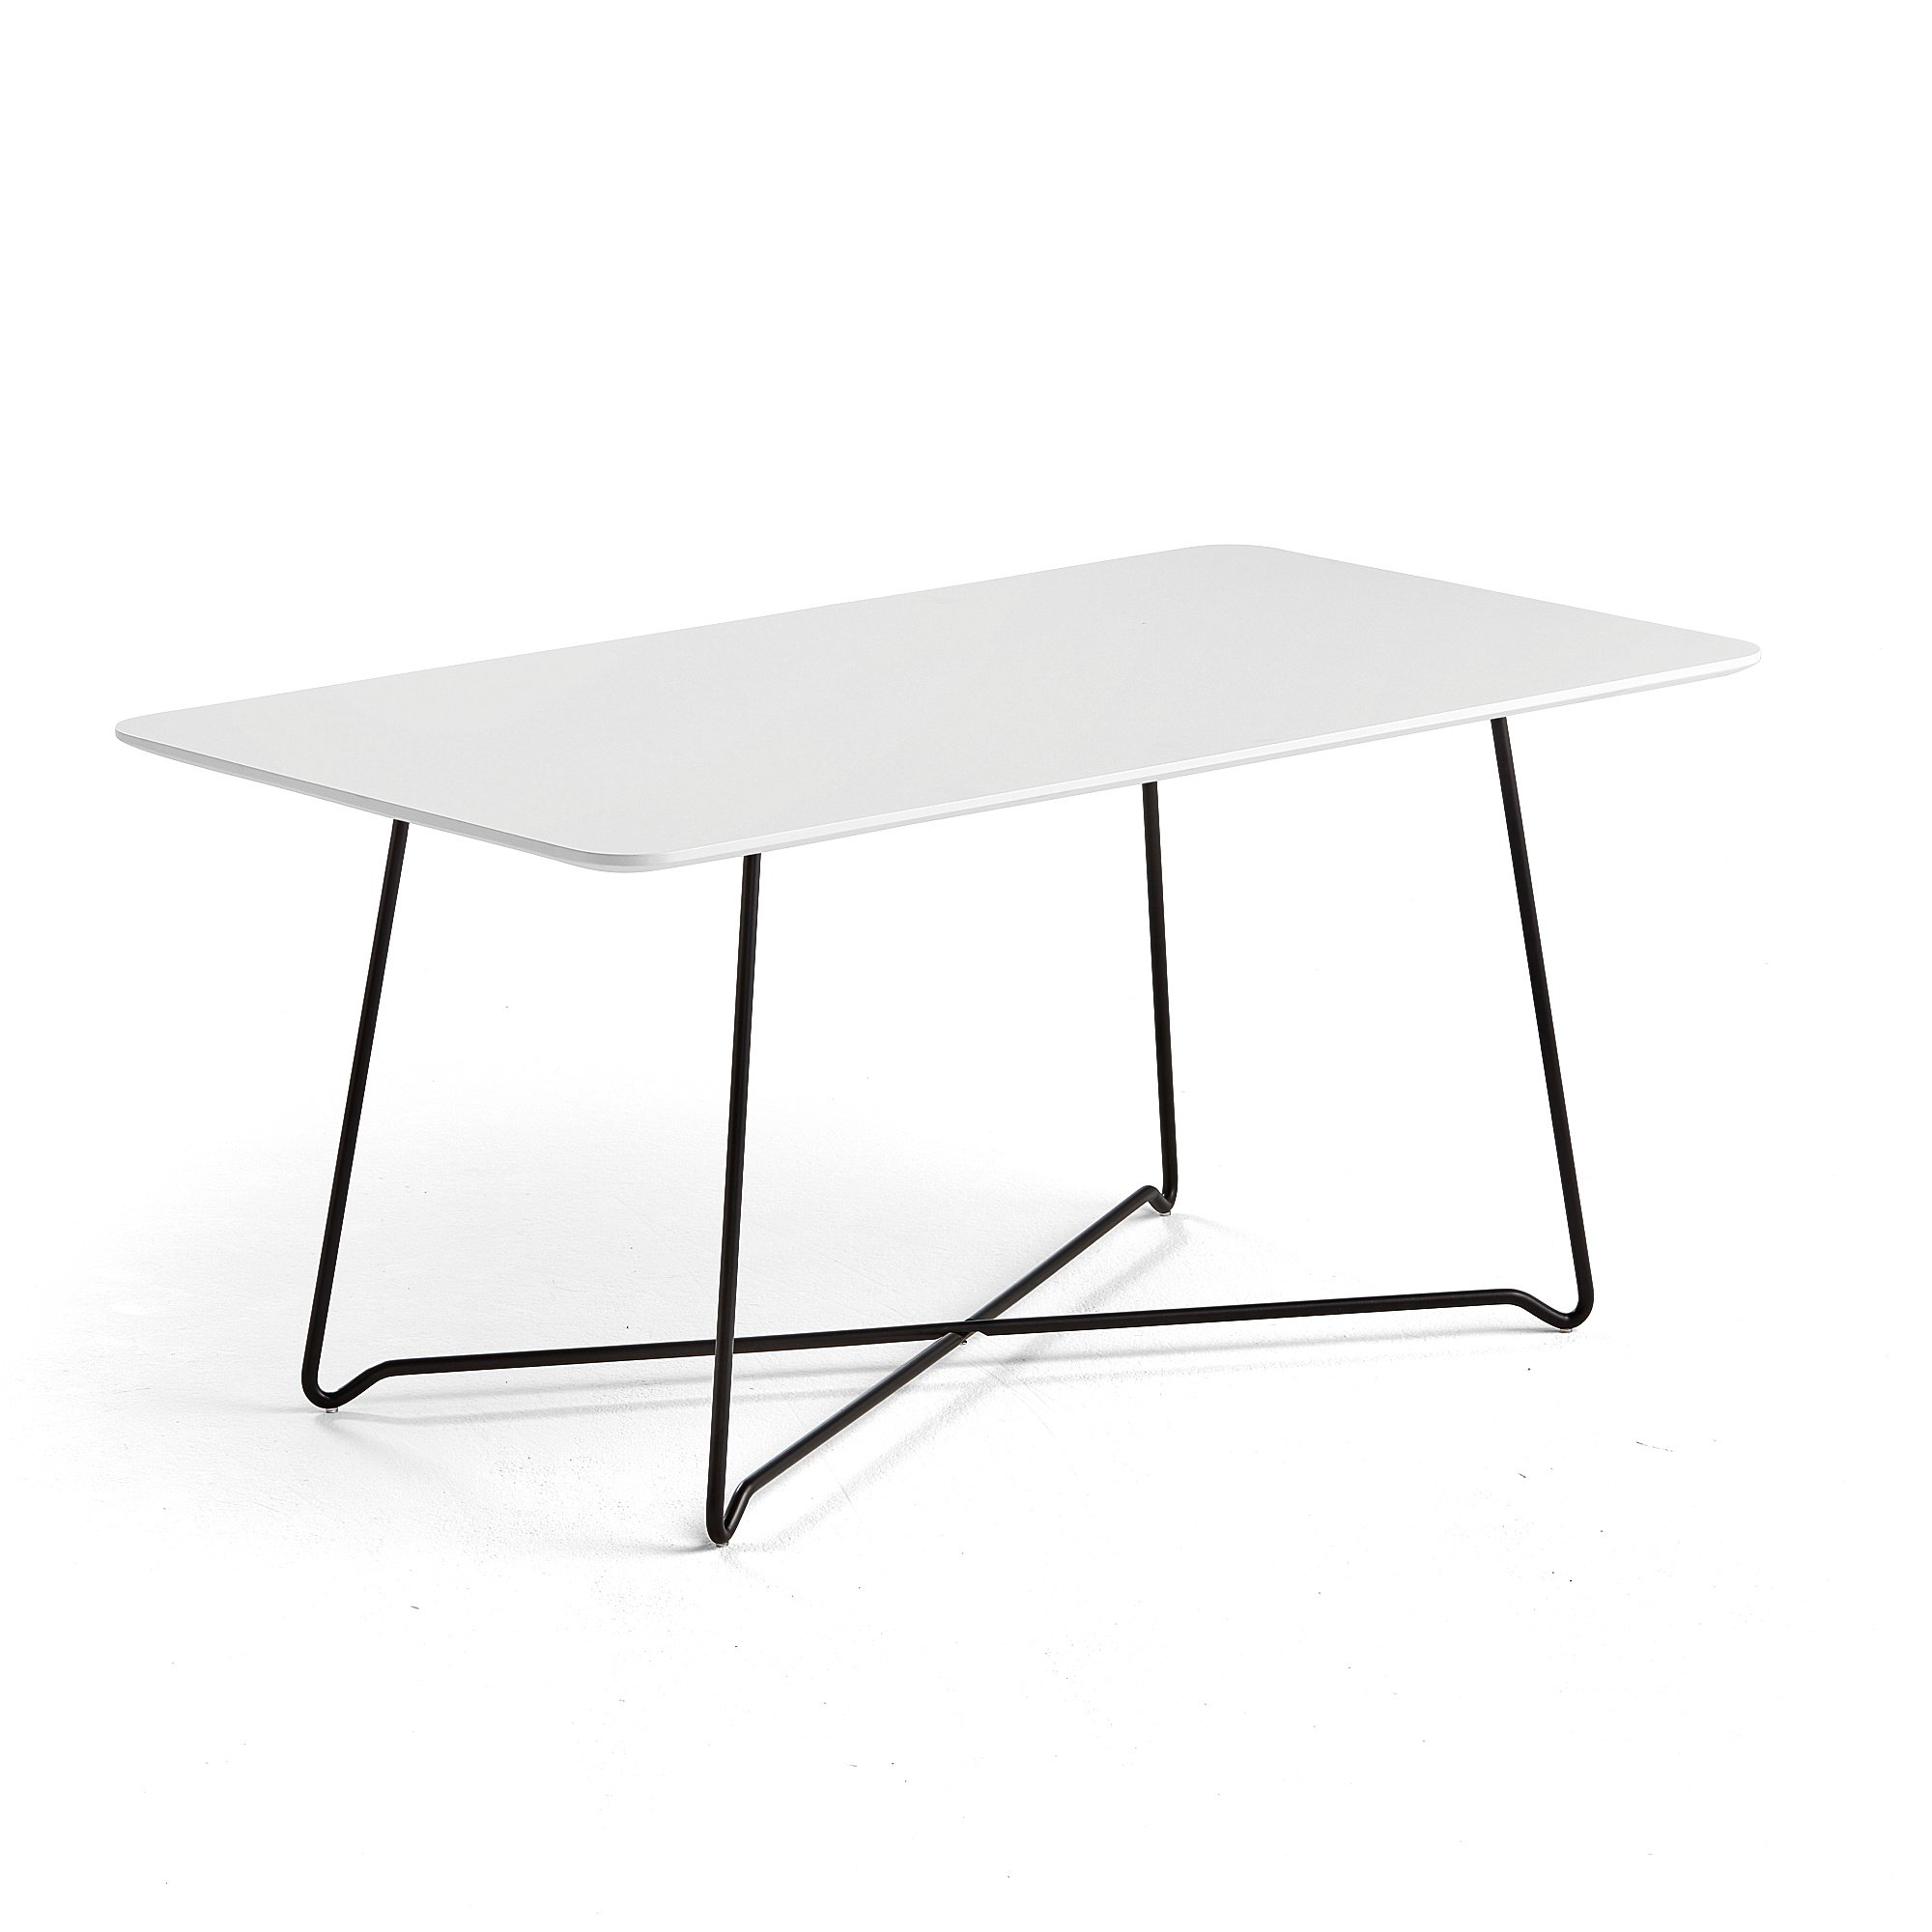 Kaviarenský stôl IRIS, 1100x600 mm, čierna, biela